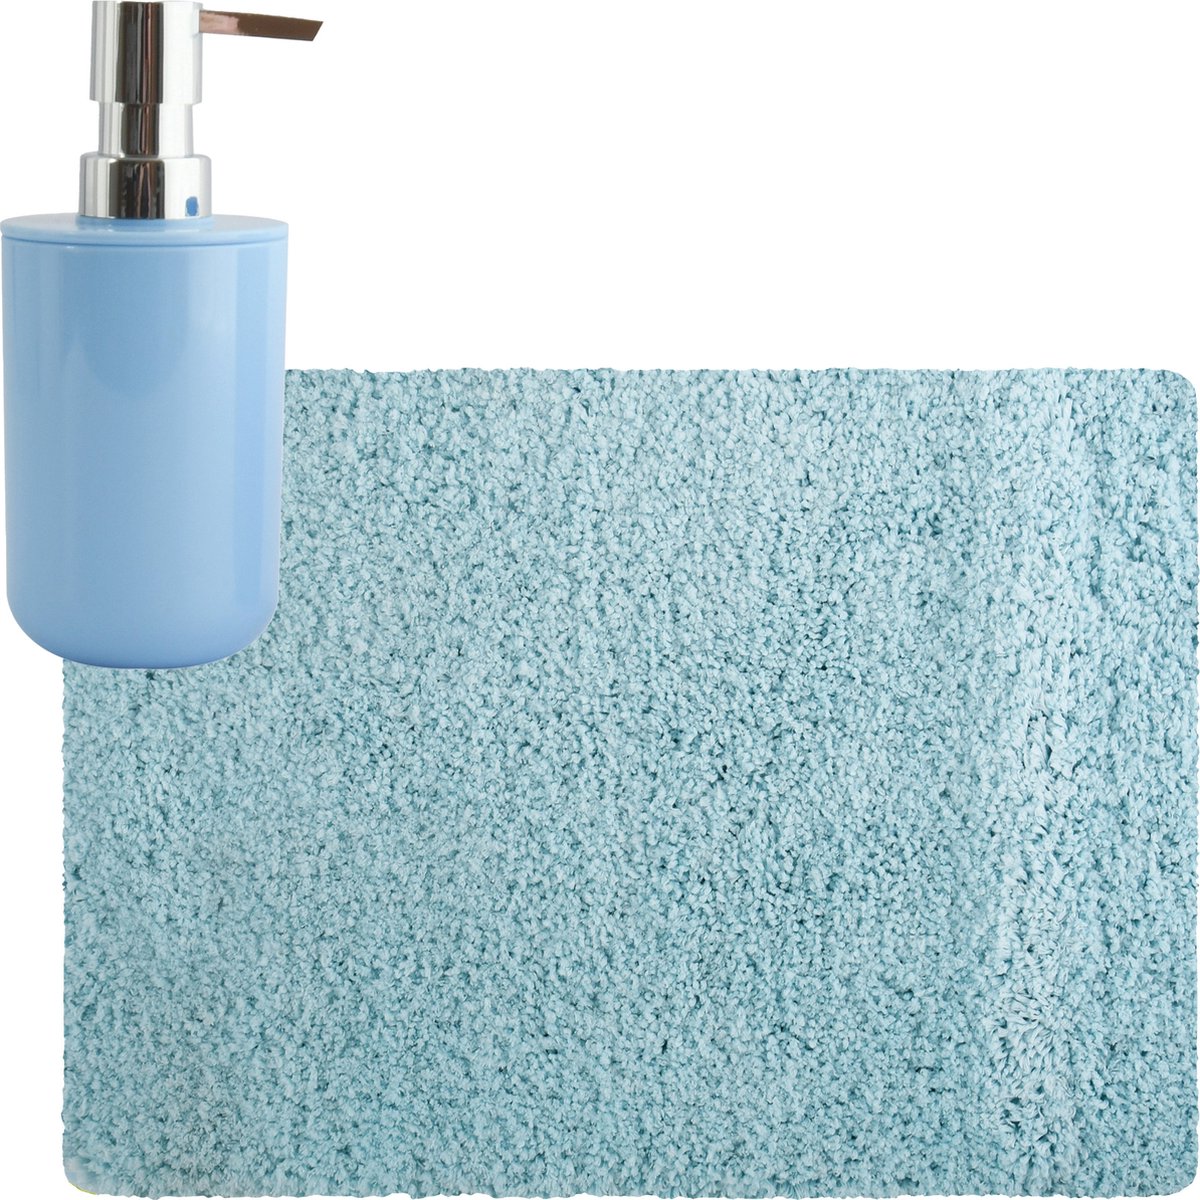 MSV badkamer droogloop tapijt matje Langharig 50 x 70 cm inclusief zeeppompje in dezelfde kleur lichtblauw